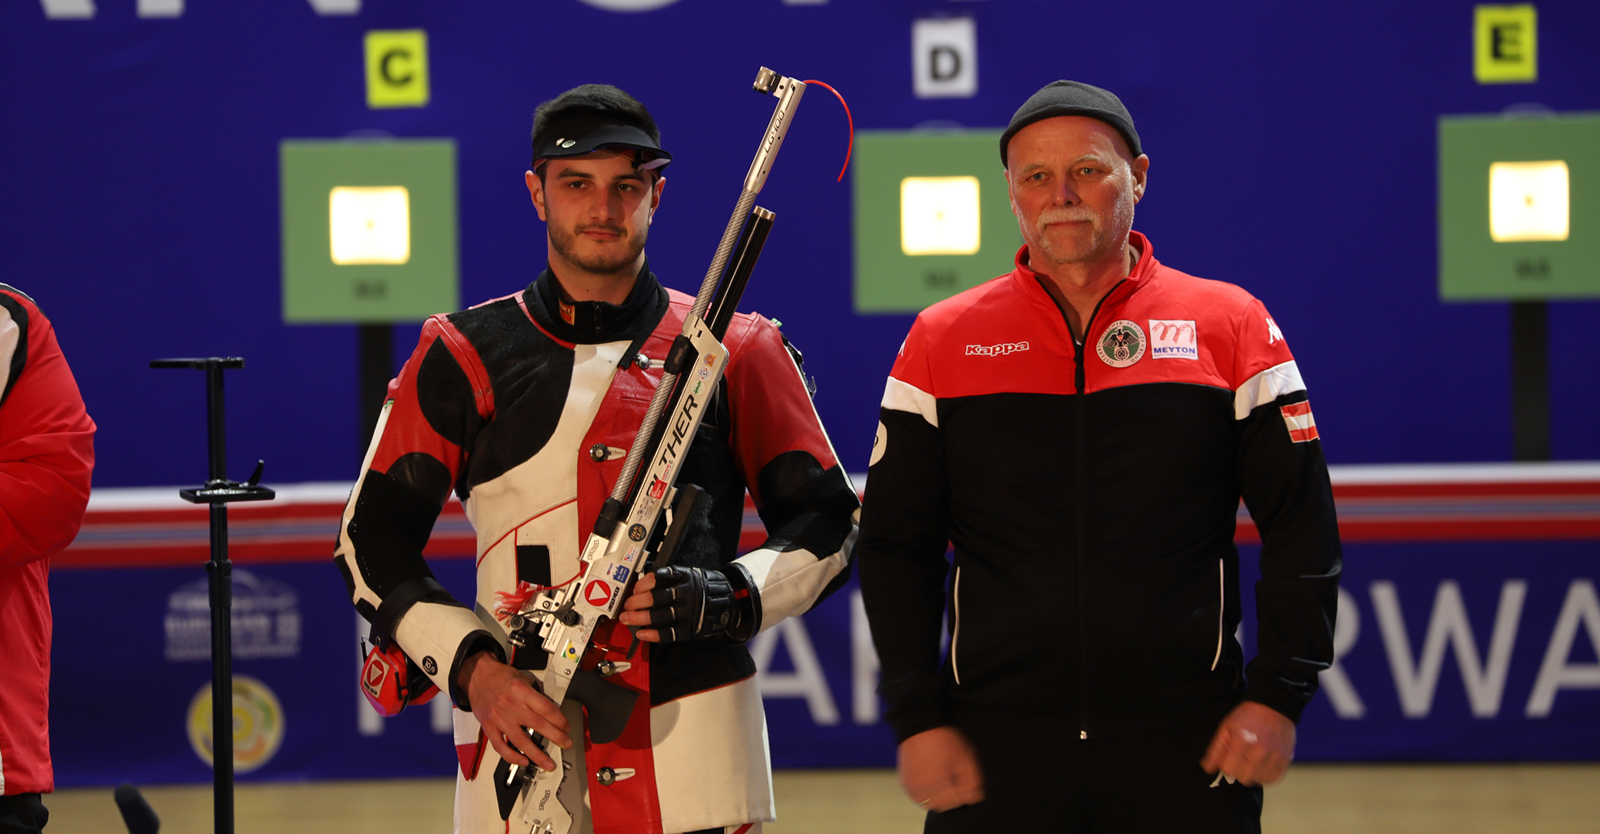 Andreas Thum mit ÖSB-Trainer Hubert Bichler nach dem Semifinale © Sheileen Waibel